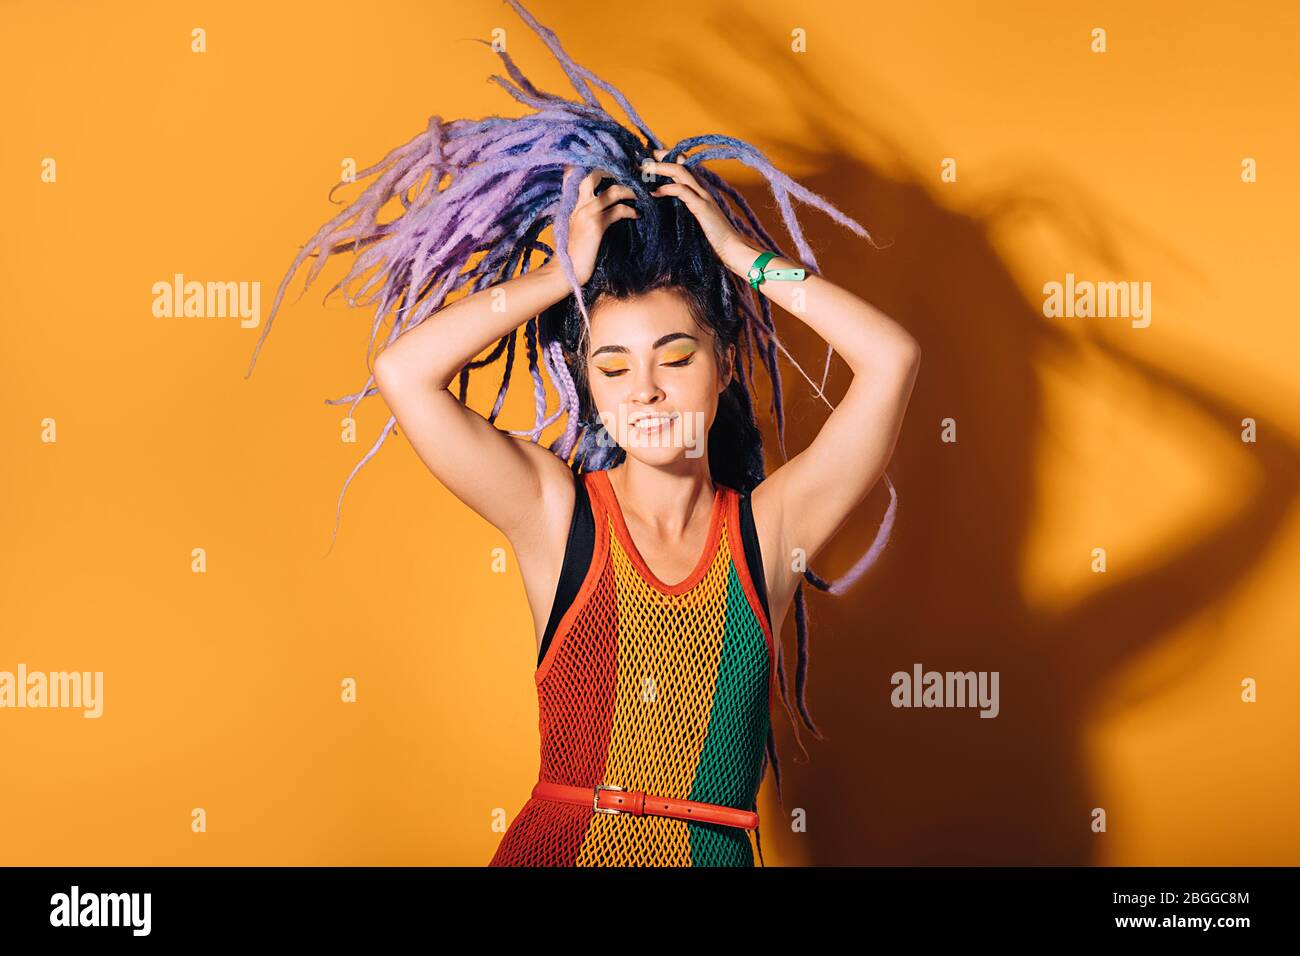 Hipster Frau im Rasta-Kleid und einem Rasta-Color Make-up tanzt zu Reggae-Musik. Orangefarbener Hintergrund Stockfoto